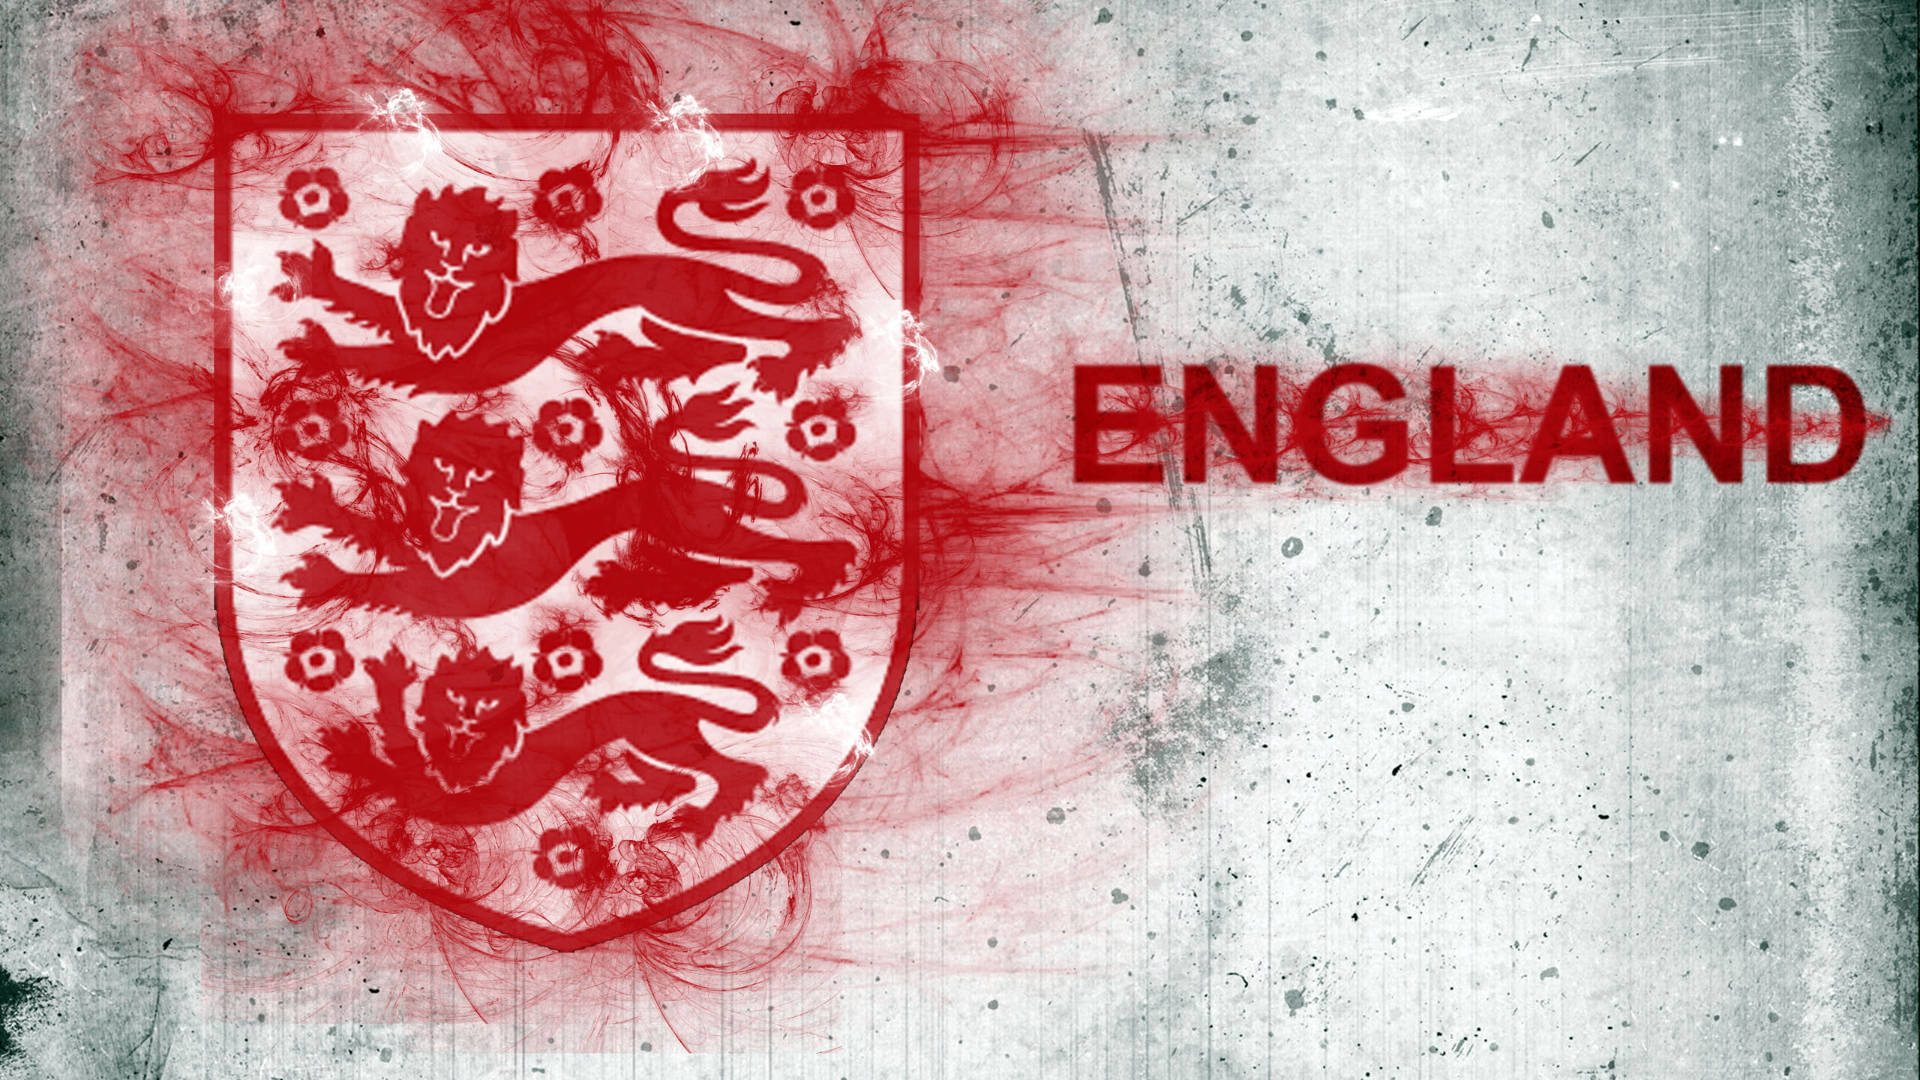 England Football Wall Graffitied Crest Wallpaper